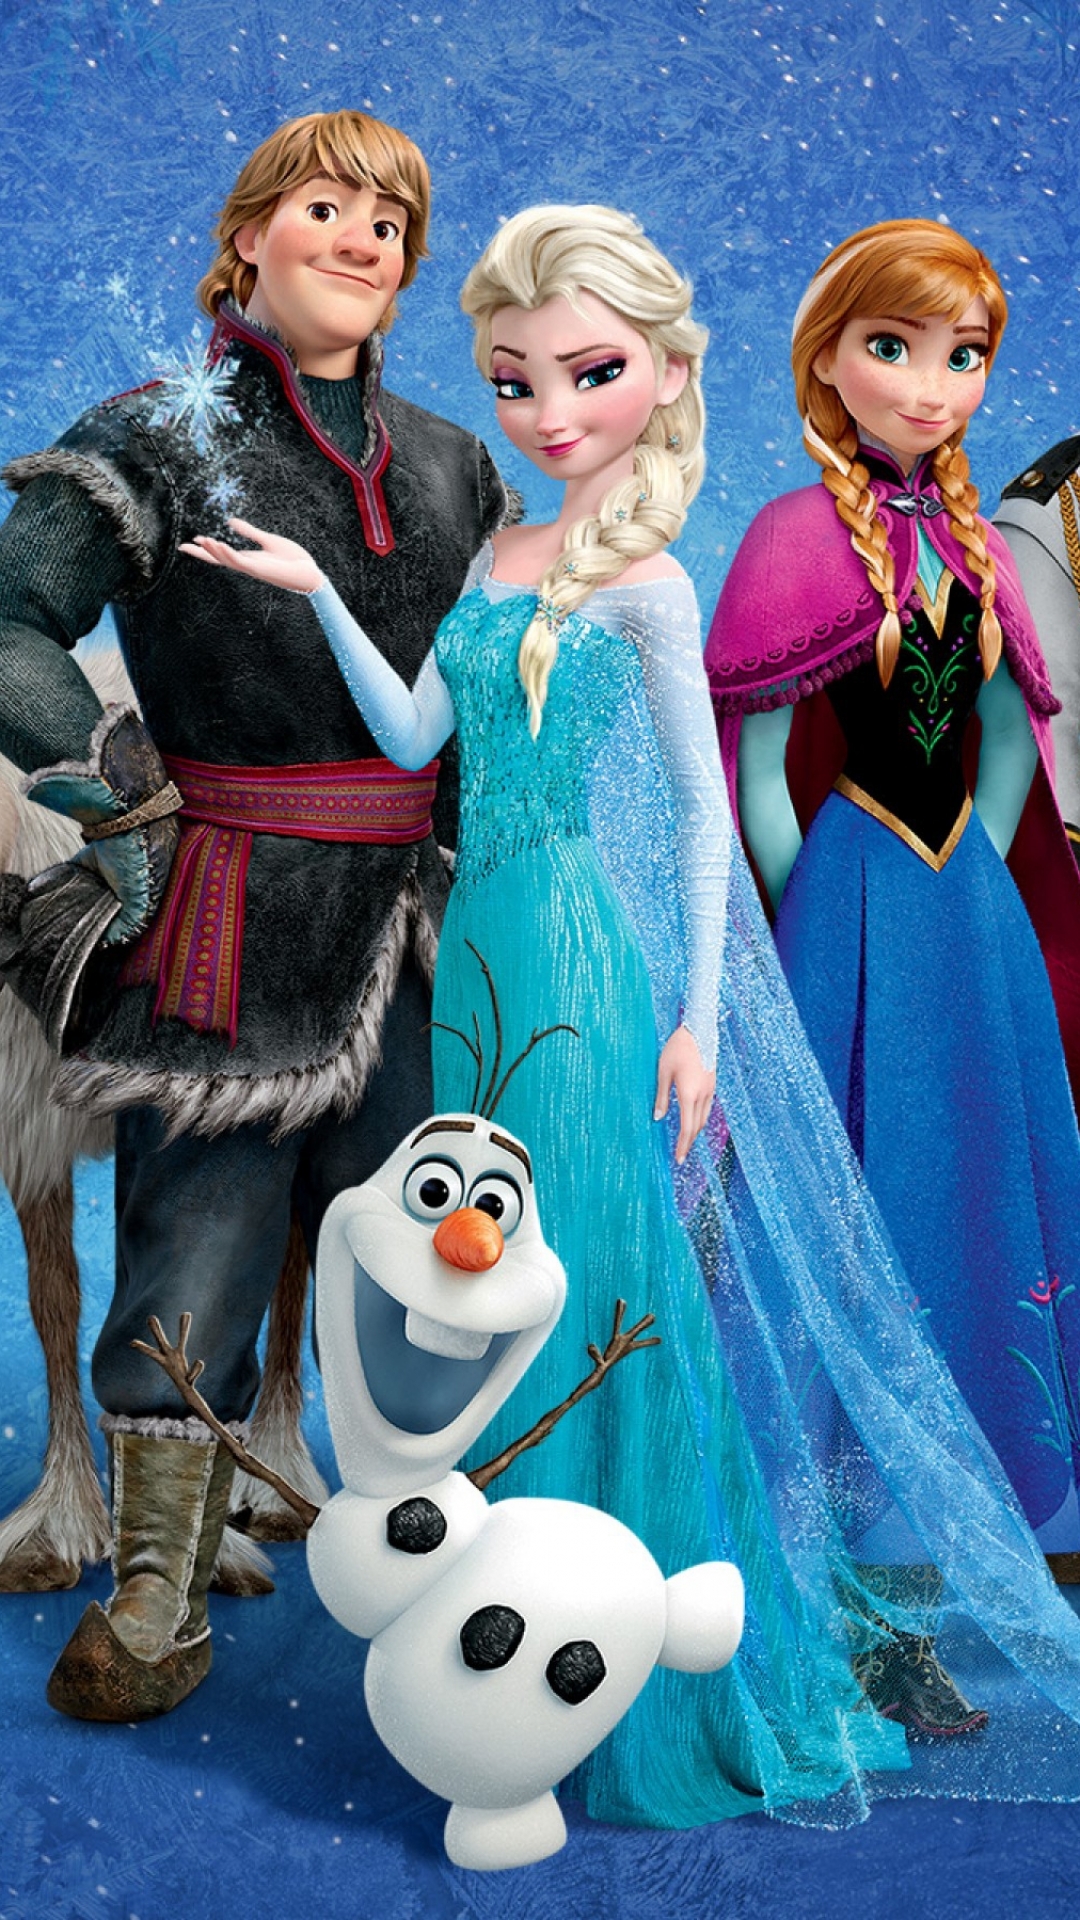 Descarga gratuita de fondo de pantalla para móvil de Películas, Frozen: El Reino Del Hielo, Congelado (Película), Ana (Congelada), Elsa (Congelada), Kristoff (Congelado), Olaf (Congelado).